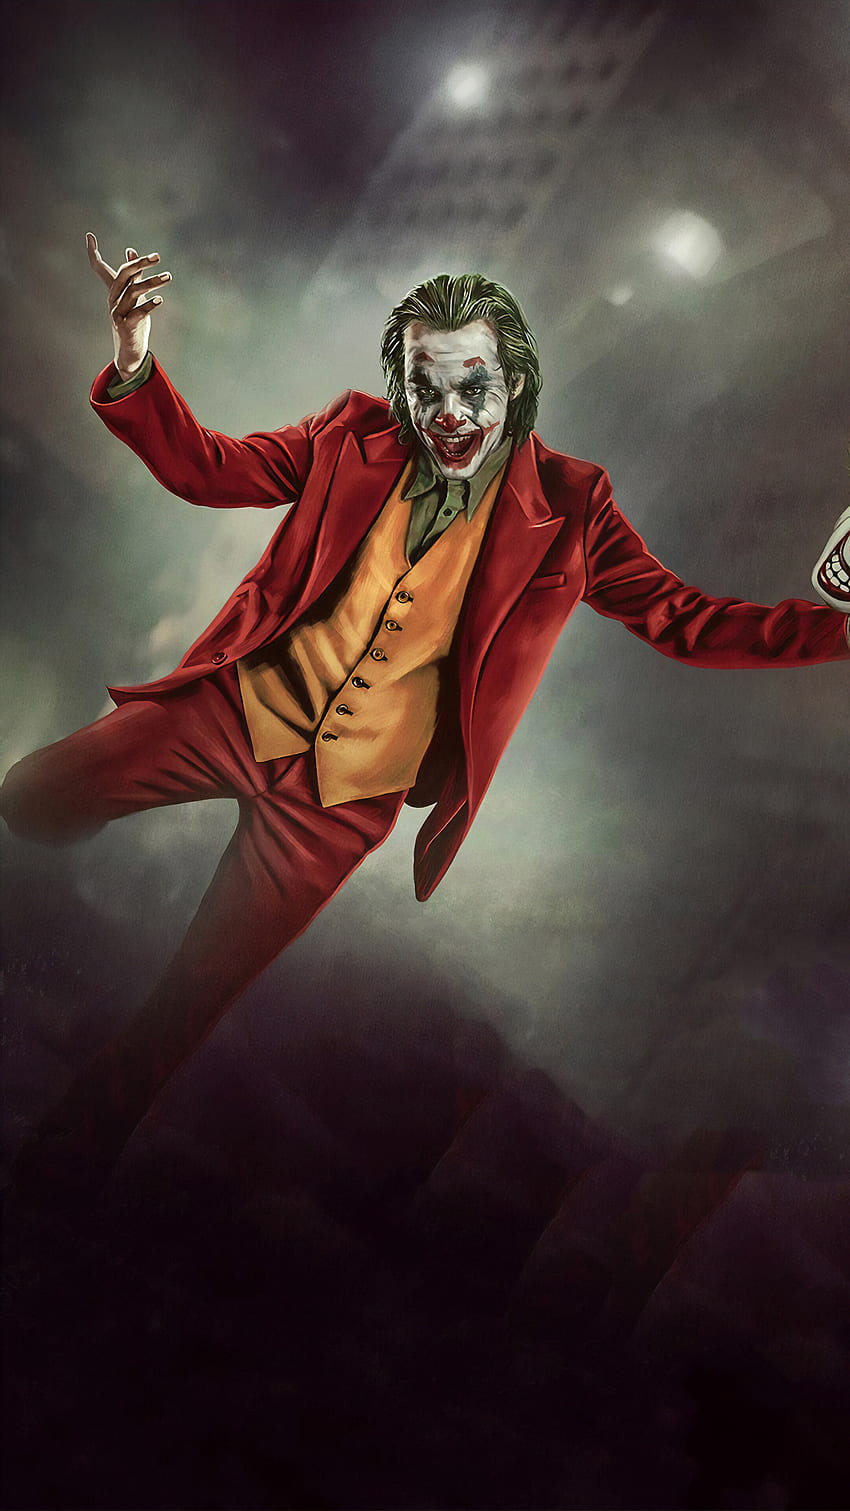 Joker, Sonrisa, Máscara, 2019, Película, Joaquin Phoenix, teléfono, y Sonrisa Mascarilla fondo de pantalla del teléfono